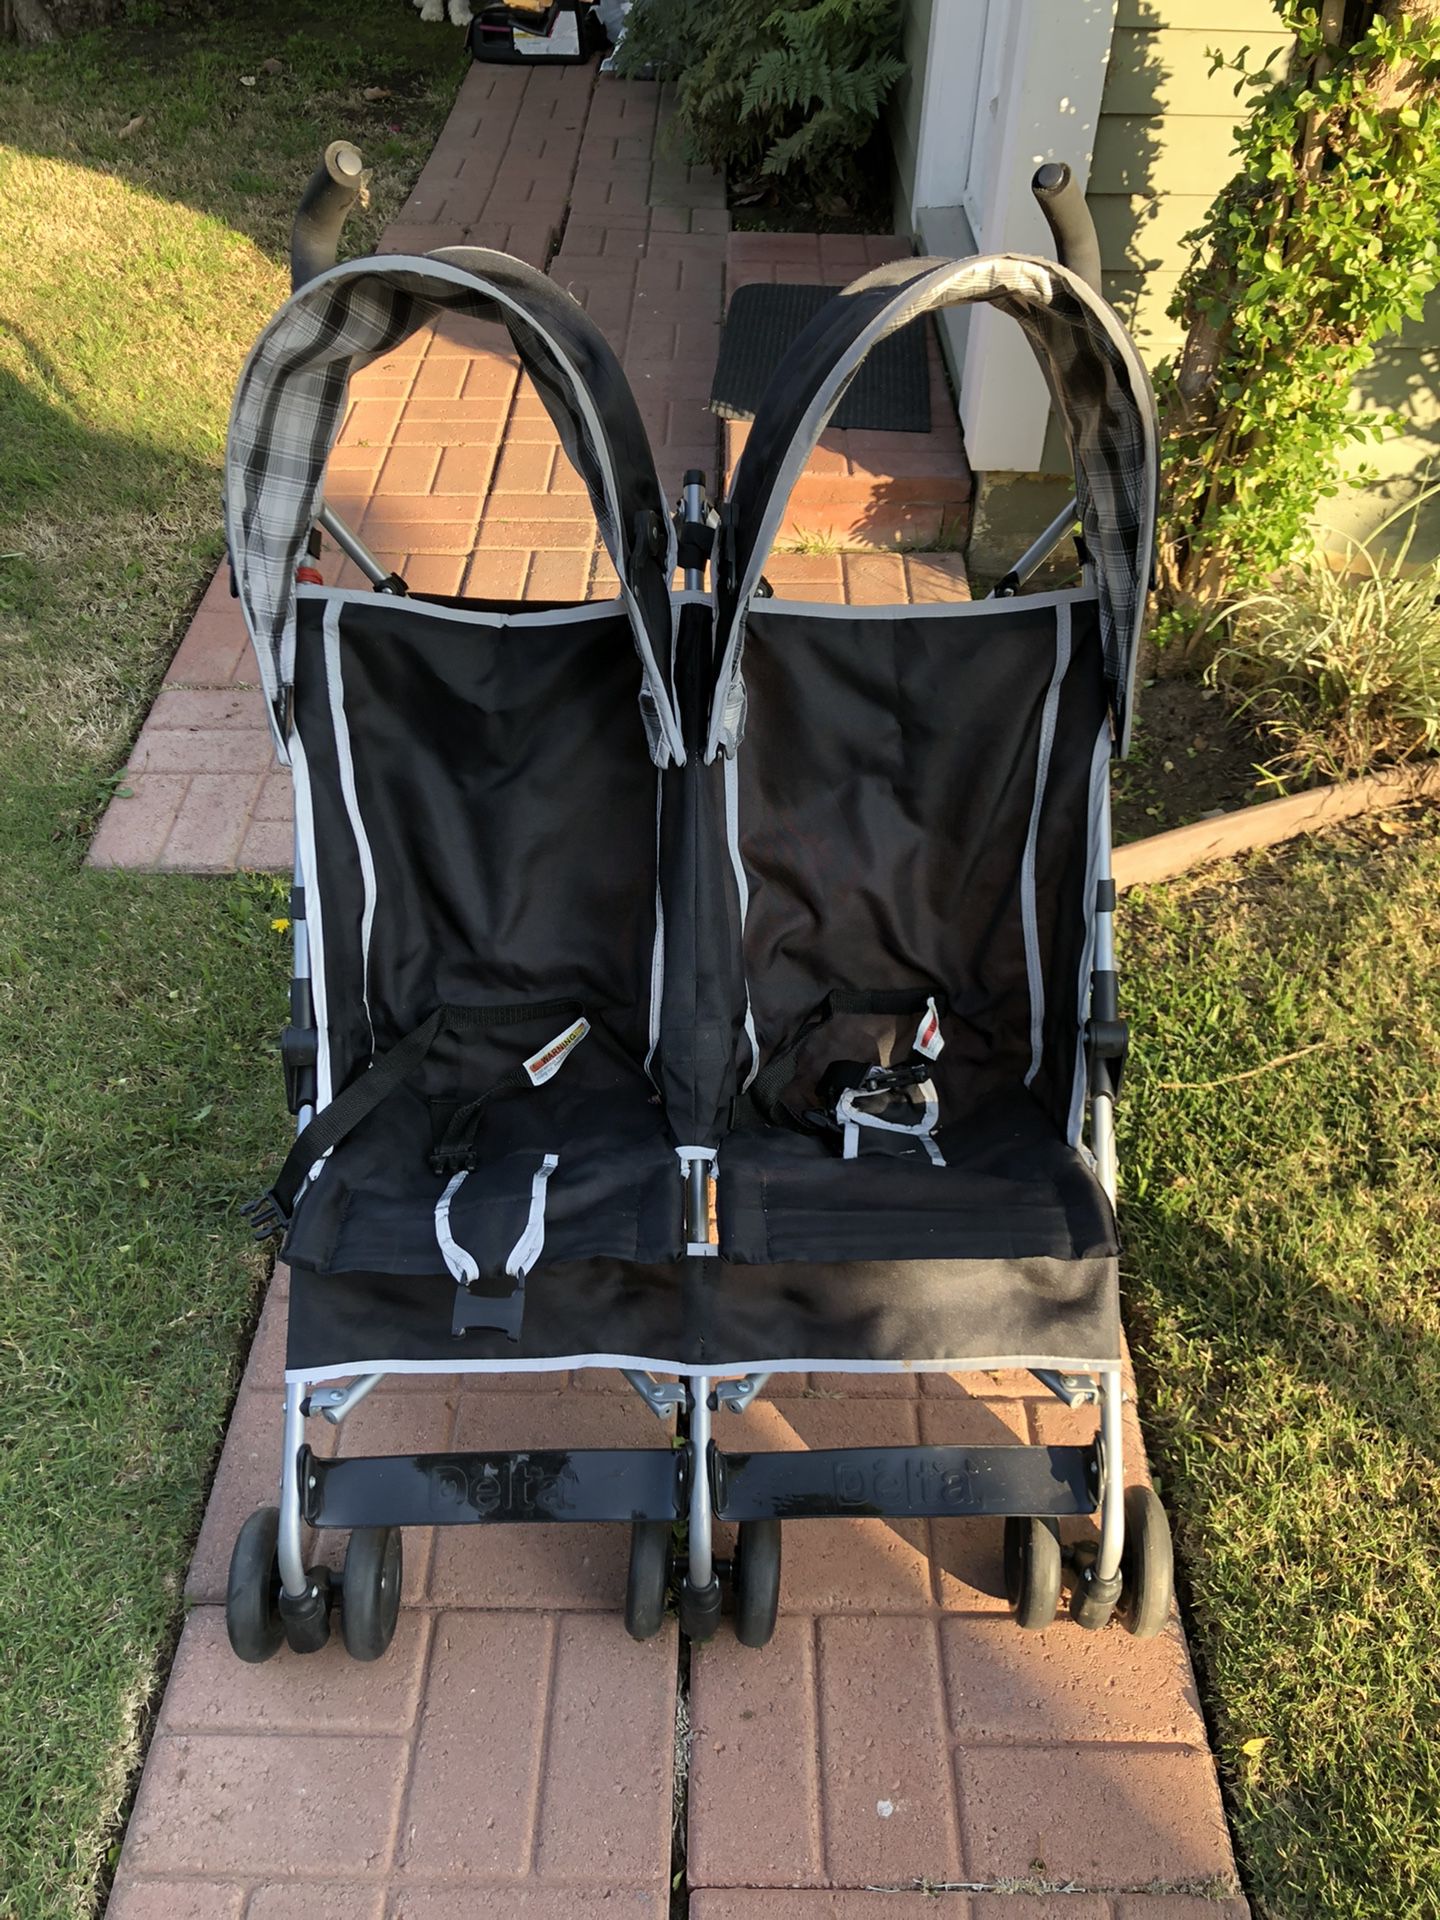 Twin Double Stroller